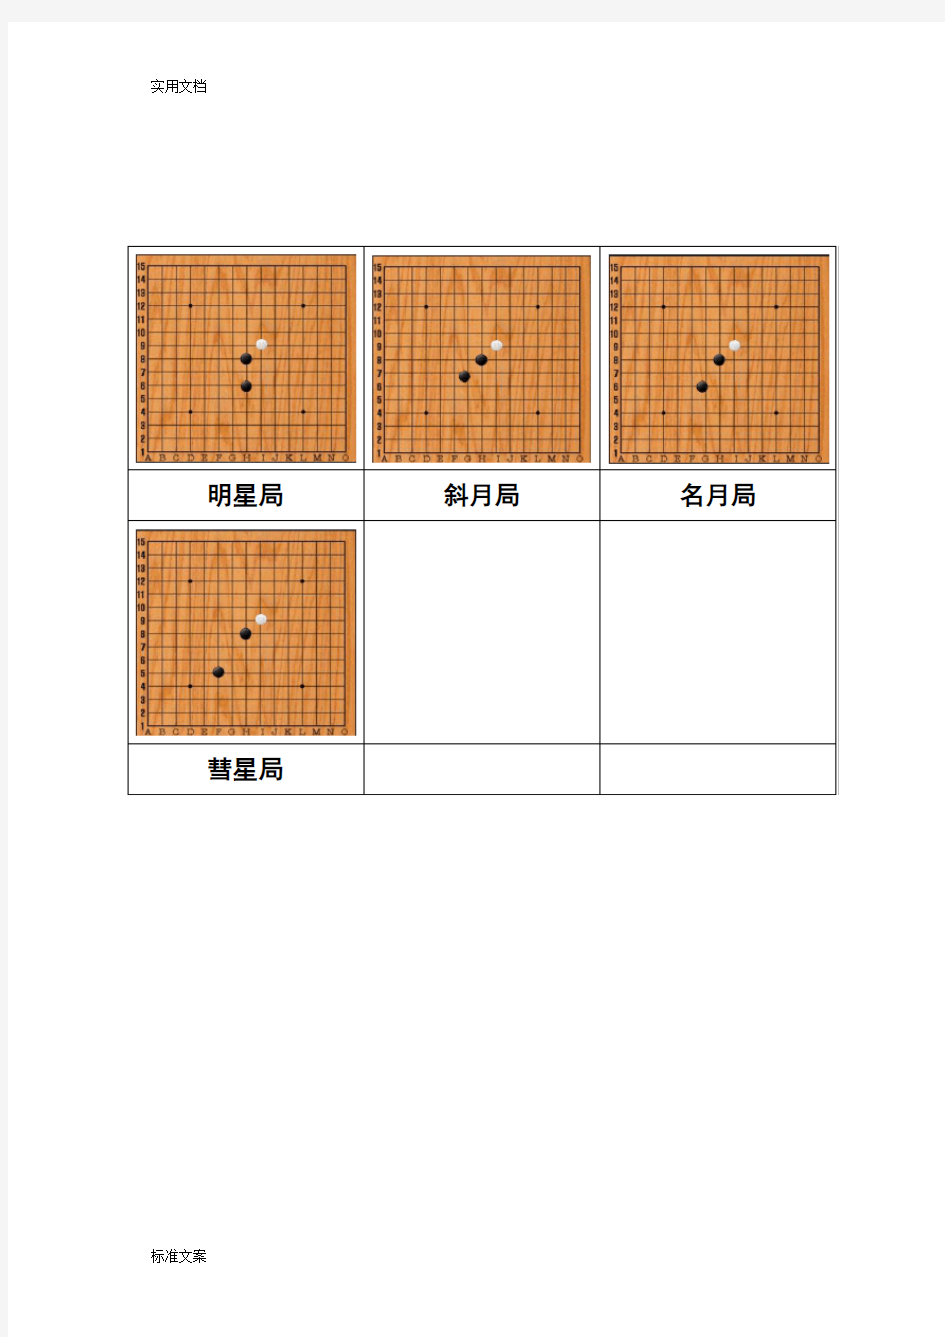 26种五子棋开局图谱,常见地五步开局棋谱(图)